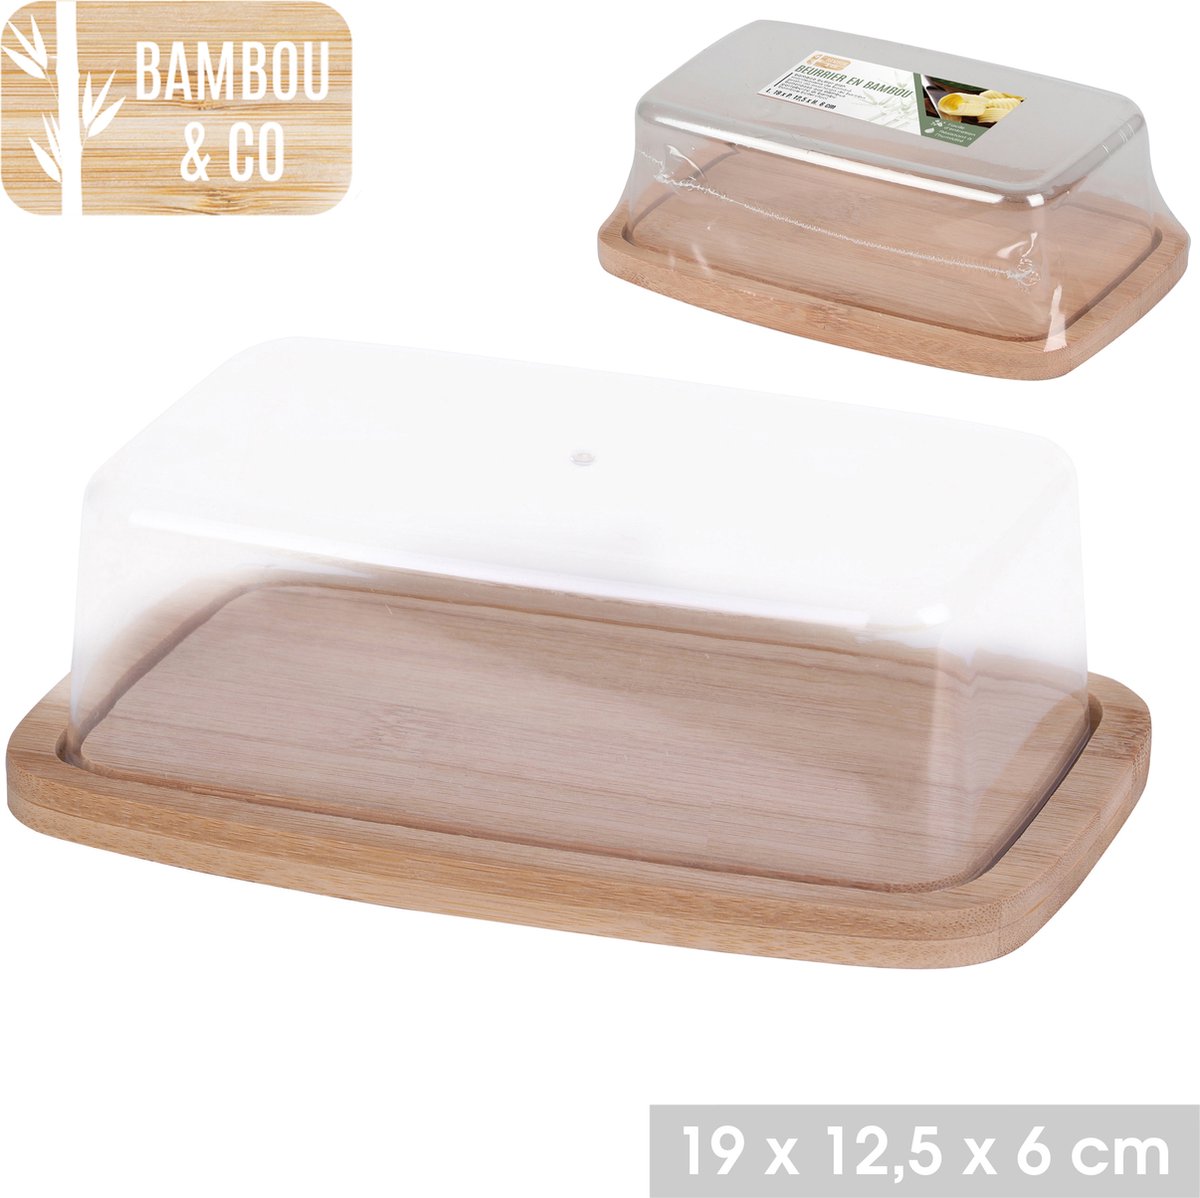 Bambou & Co botervloot - bambou - botervloot met deksel - duurzaam - 19cm x 12,5cm x H6cm